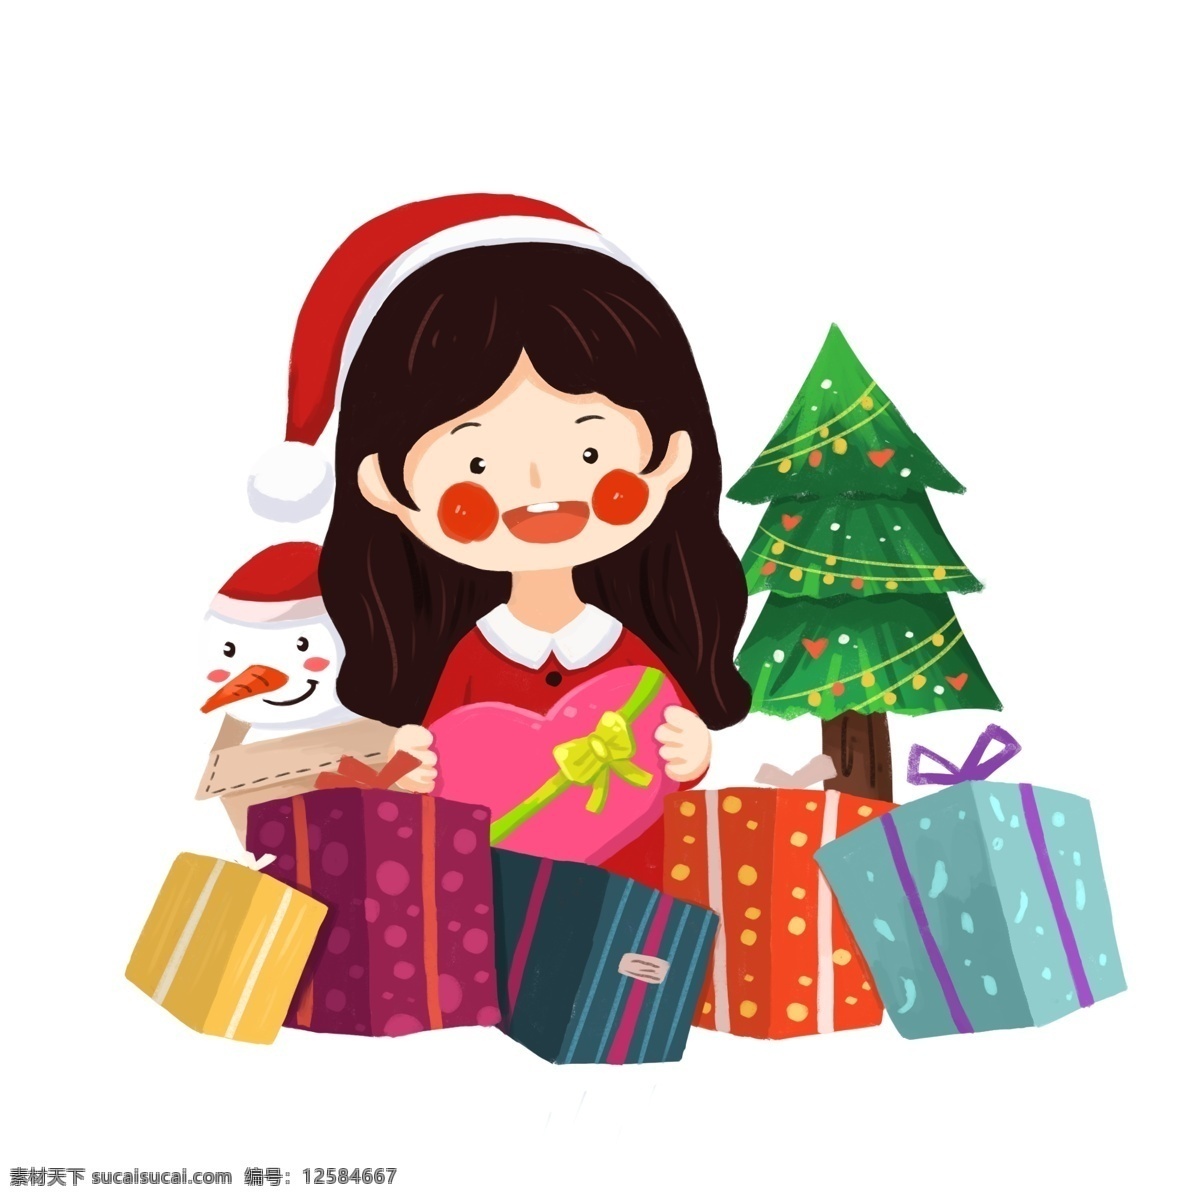 圣诞 绿色 唯美 元素 插画 女孩 收礼 物 圣诞节 西方节日 红色 圣诞女孩 收礼物 拆礼物 礼物 雪人 圣诞树